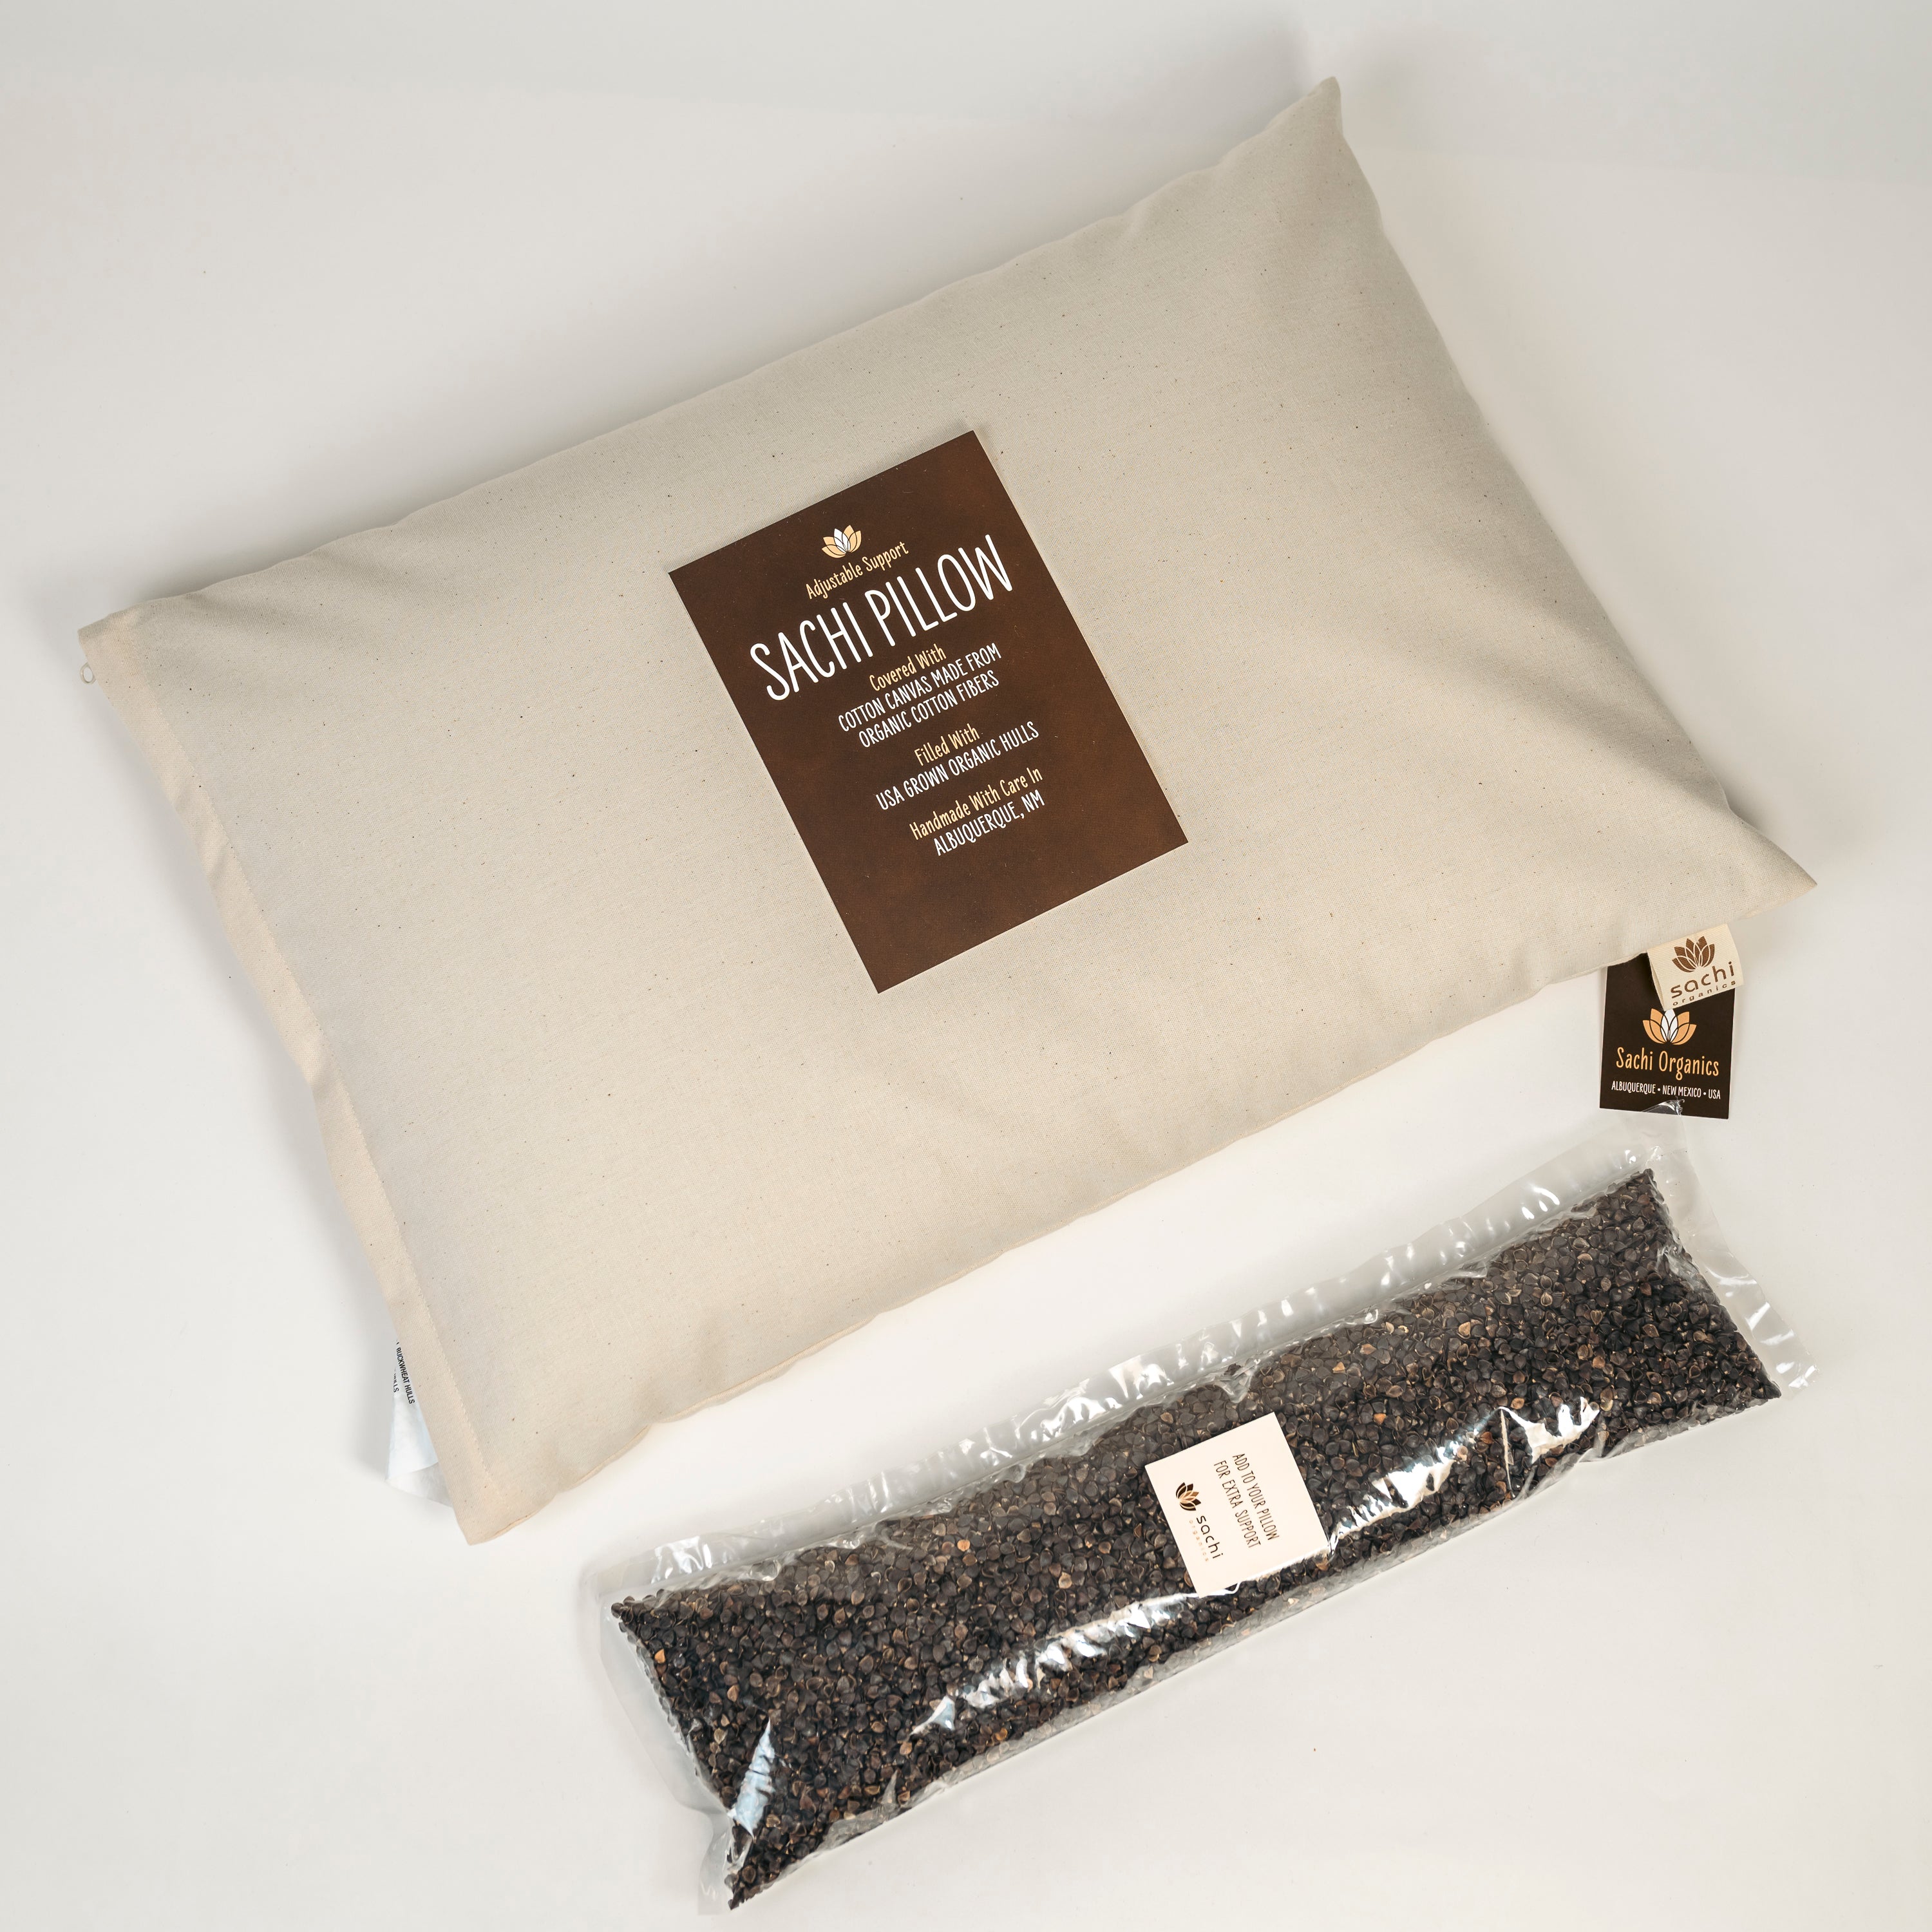 Japanese Size Buckwheat Pillow